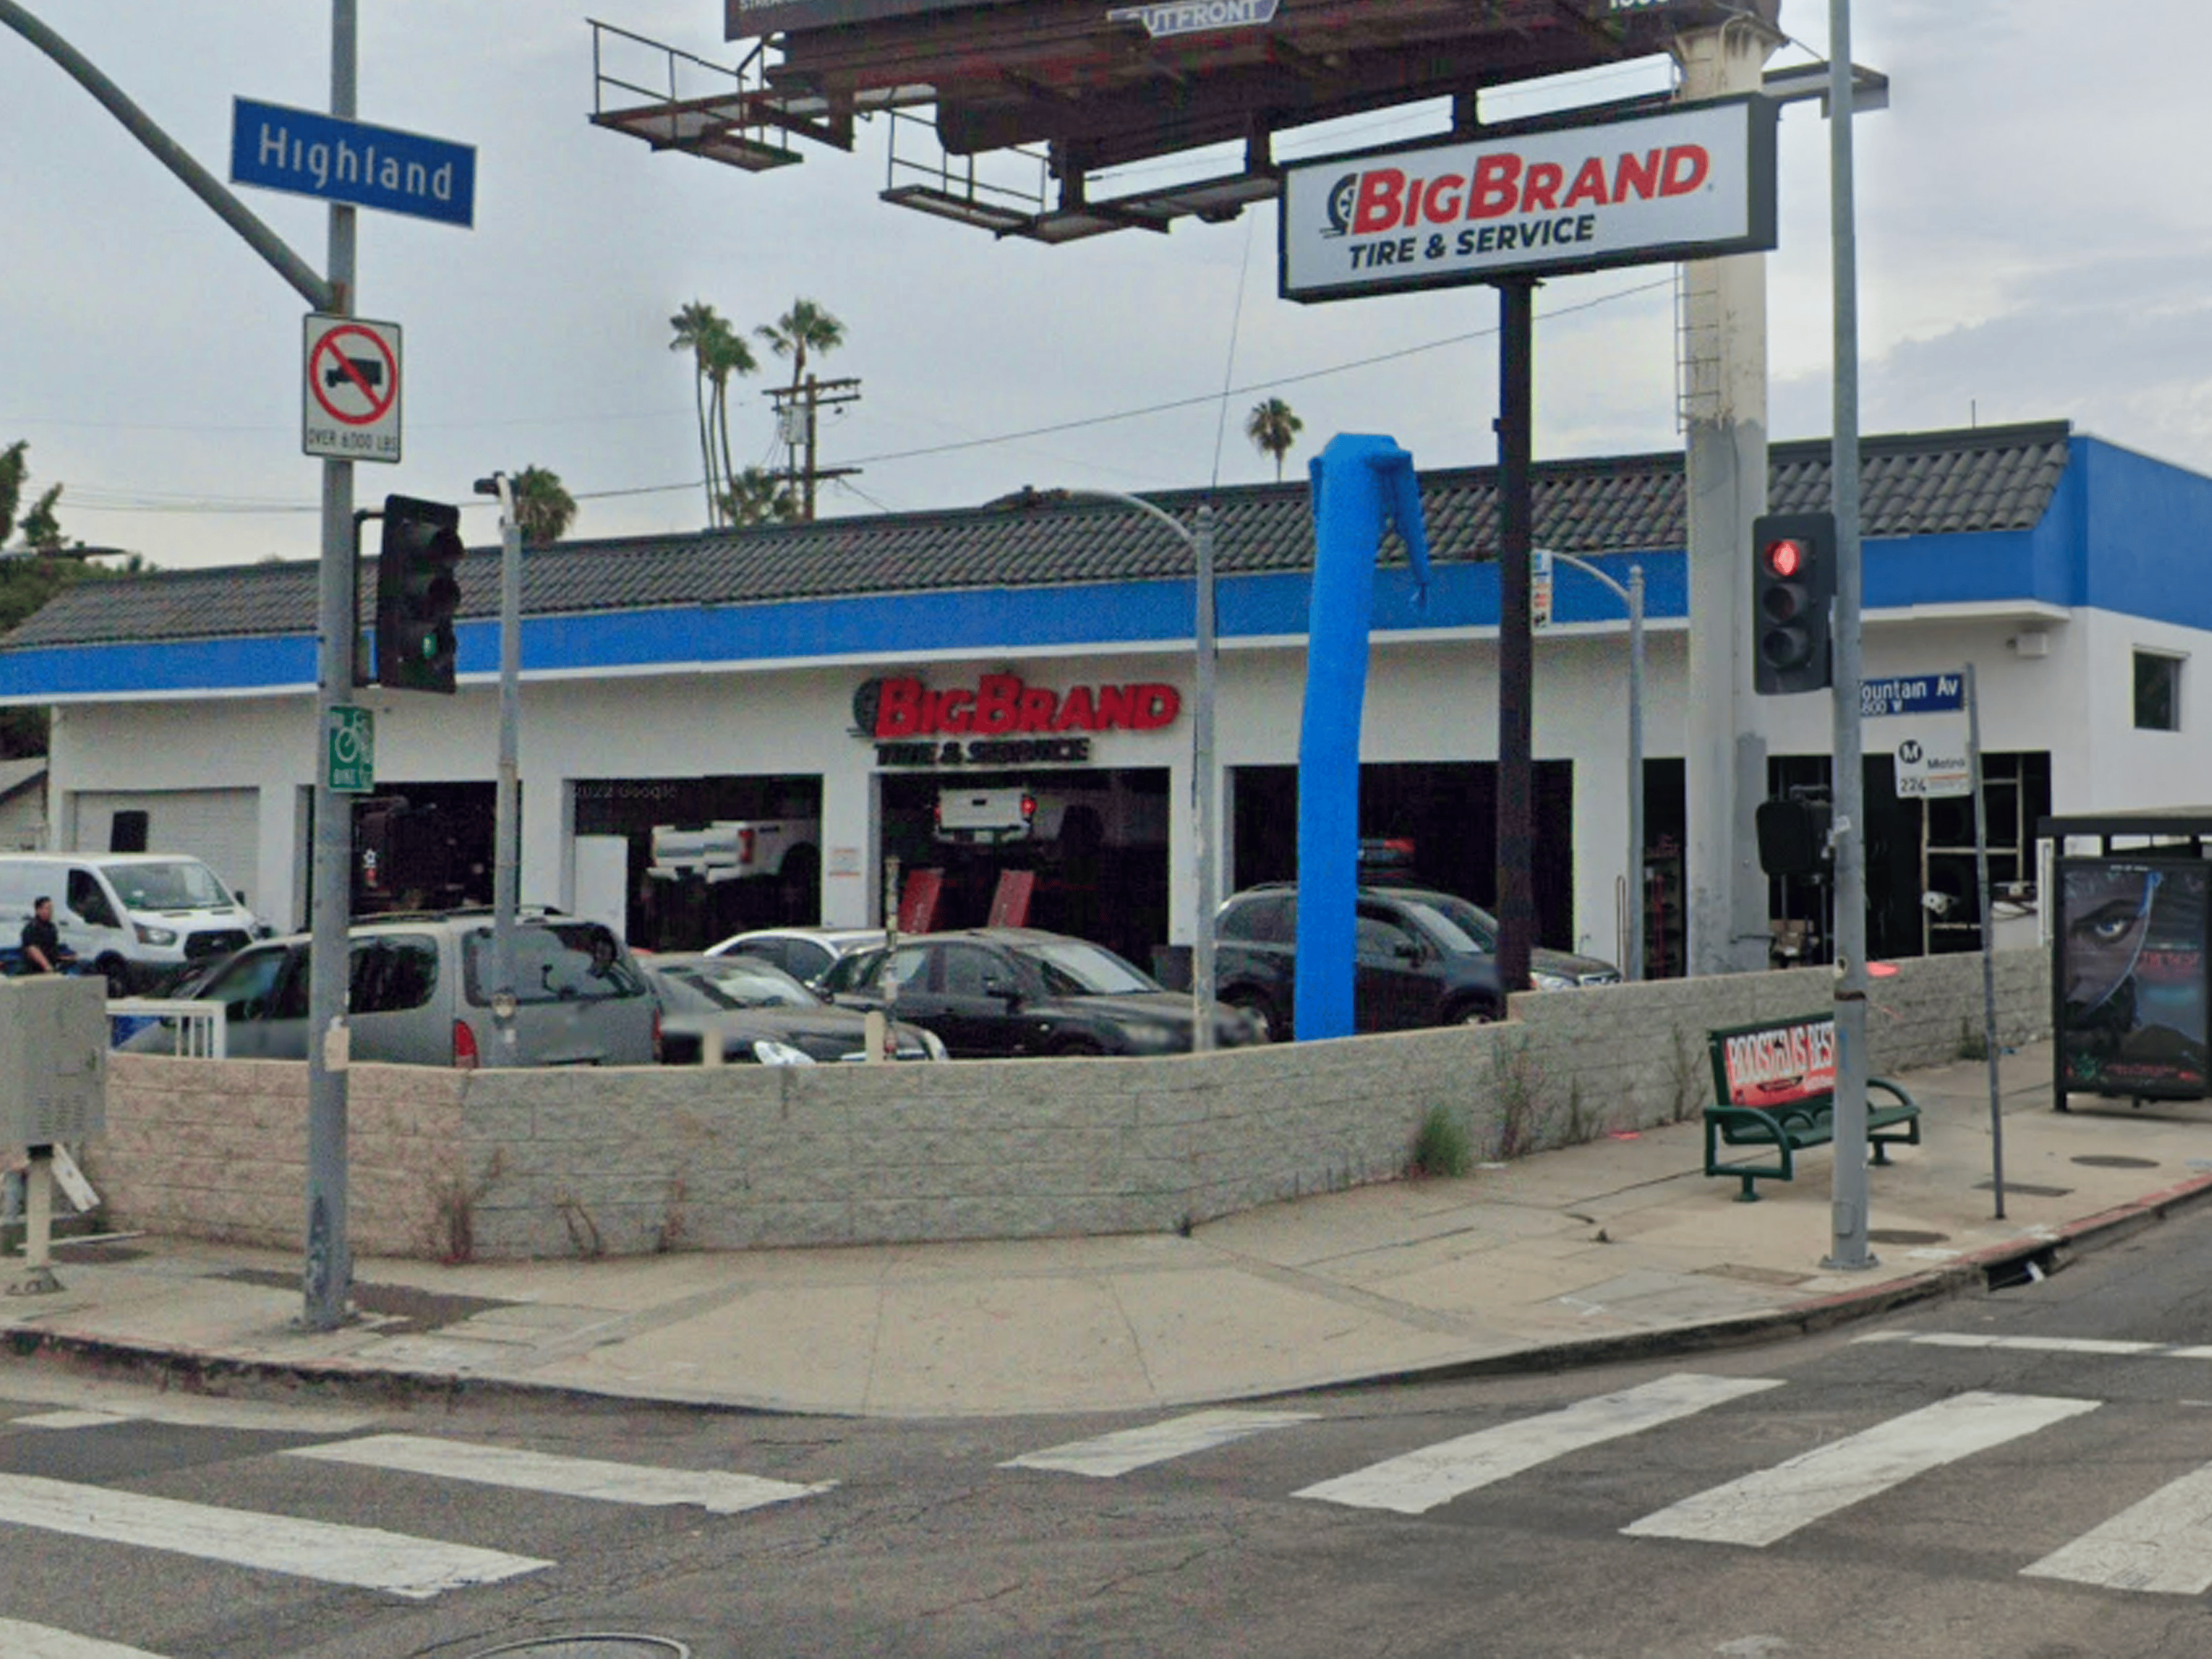 Big Brand Tire & Service - Los Angeles (CA 90028), US, car tyres